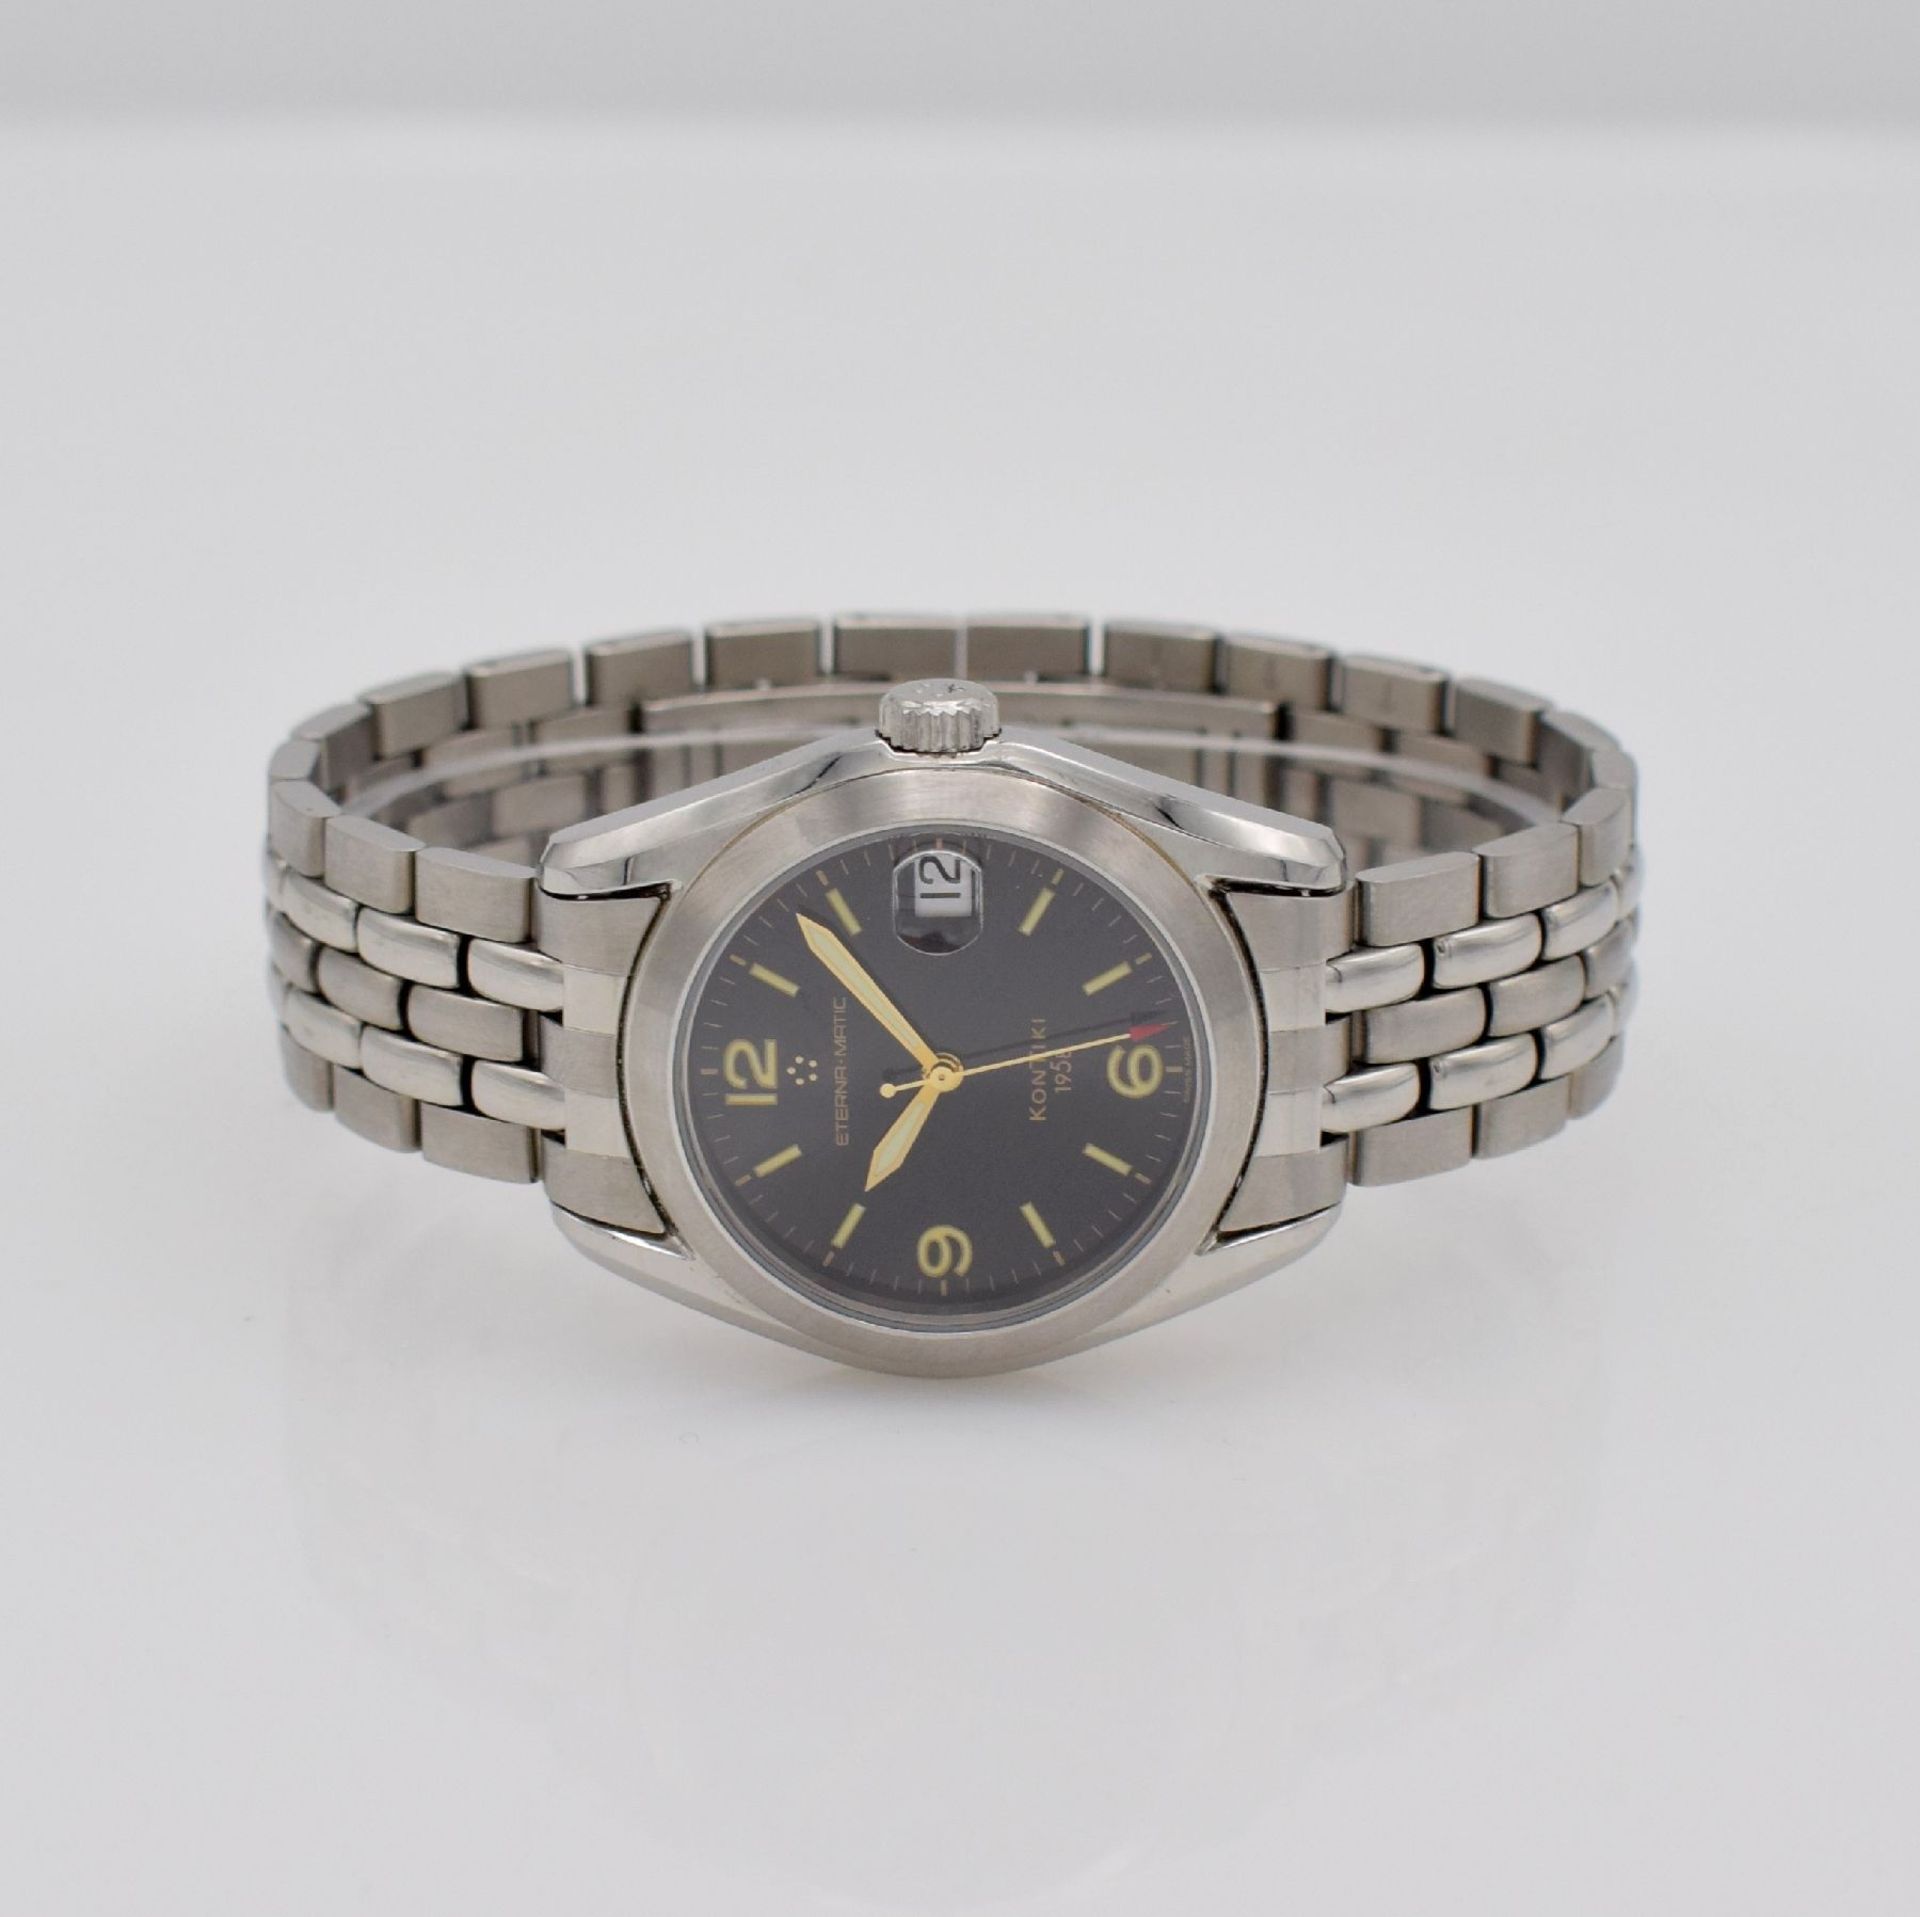 ETERNA-MATIC KonTiki 1958 gents wristwatch, Switzerland around 2000, screwed down stainless steel